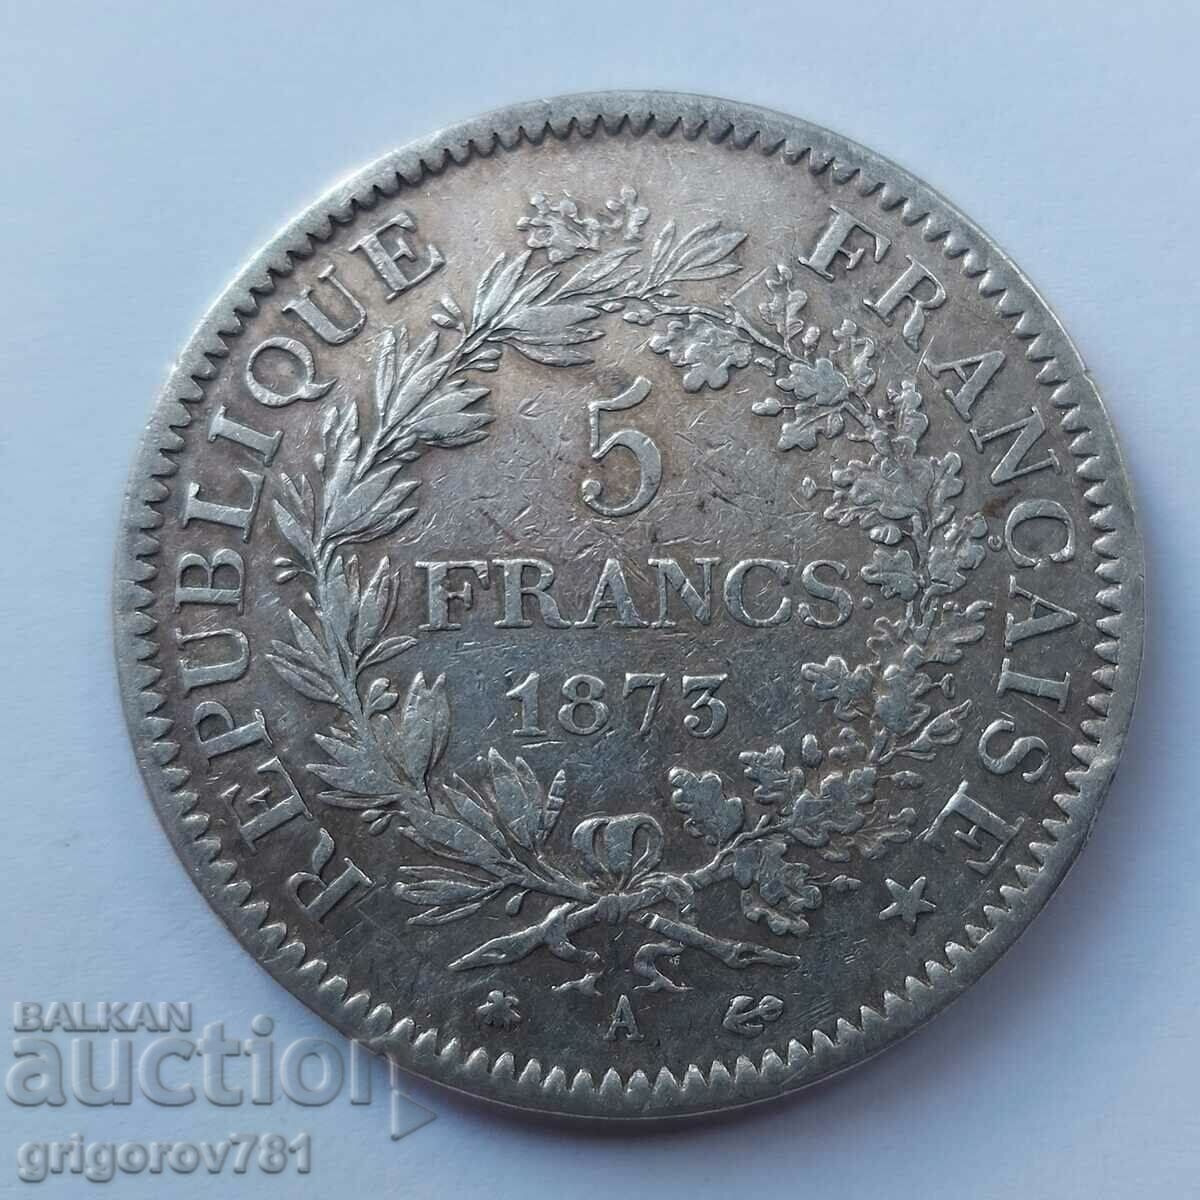 Ασημένιο 5 φράγκα Γαλλία 1873 Α - ασημένιο νόμισμα # 46